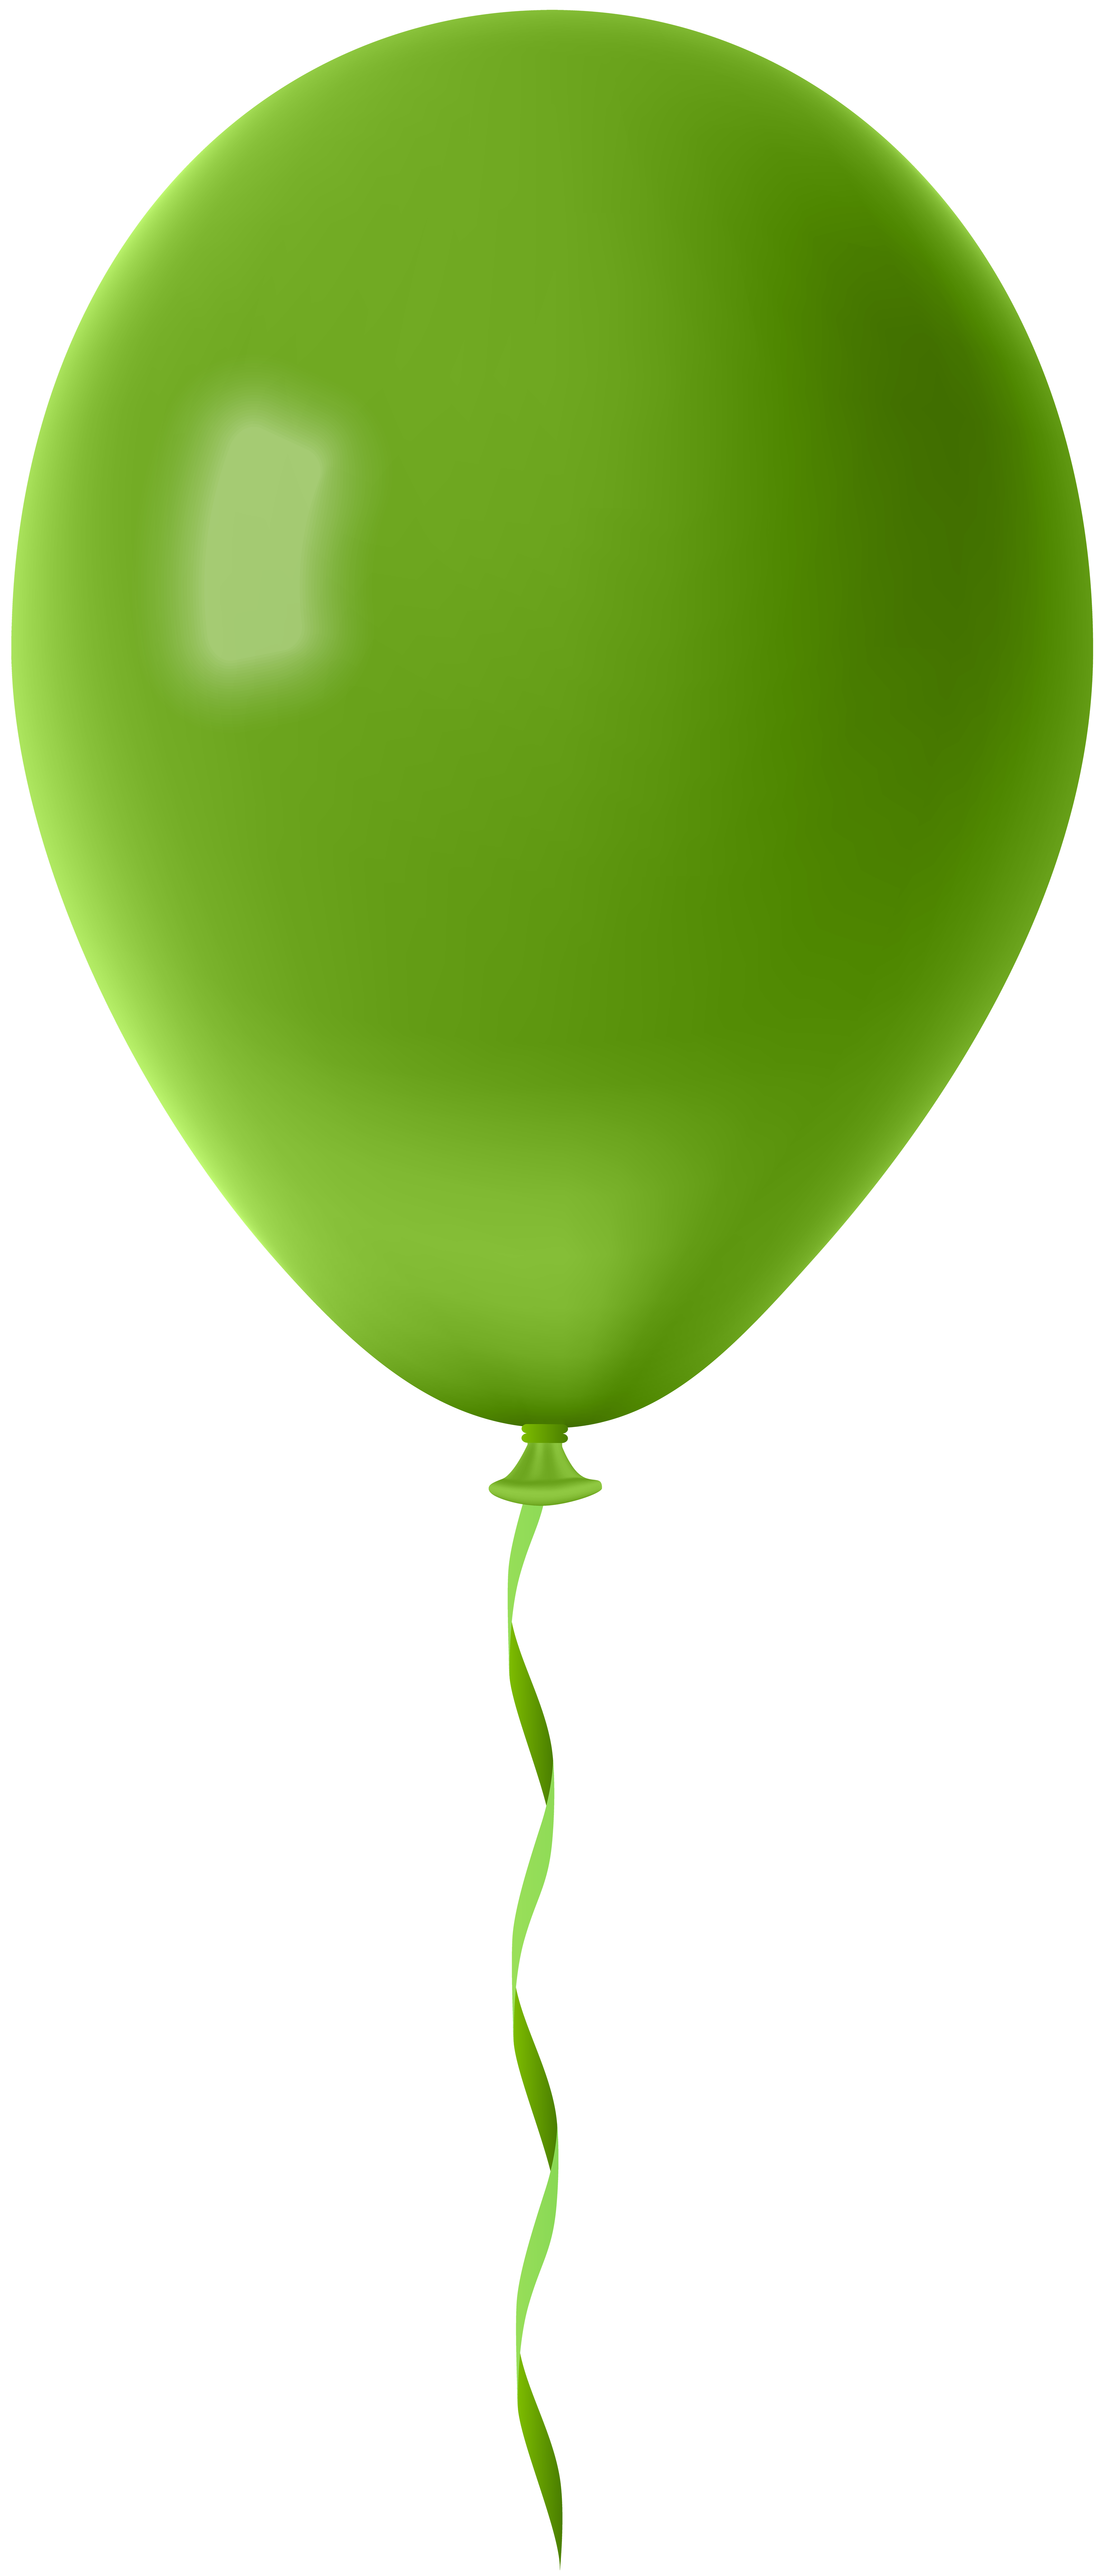 clipart balloon light green